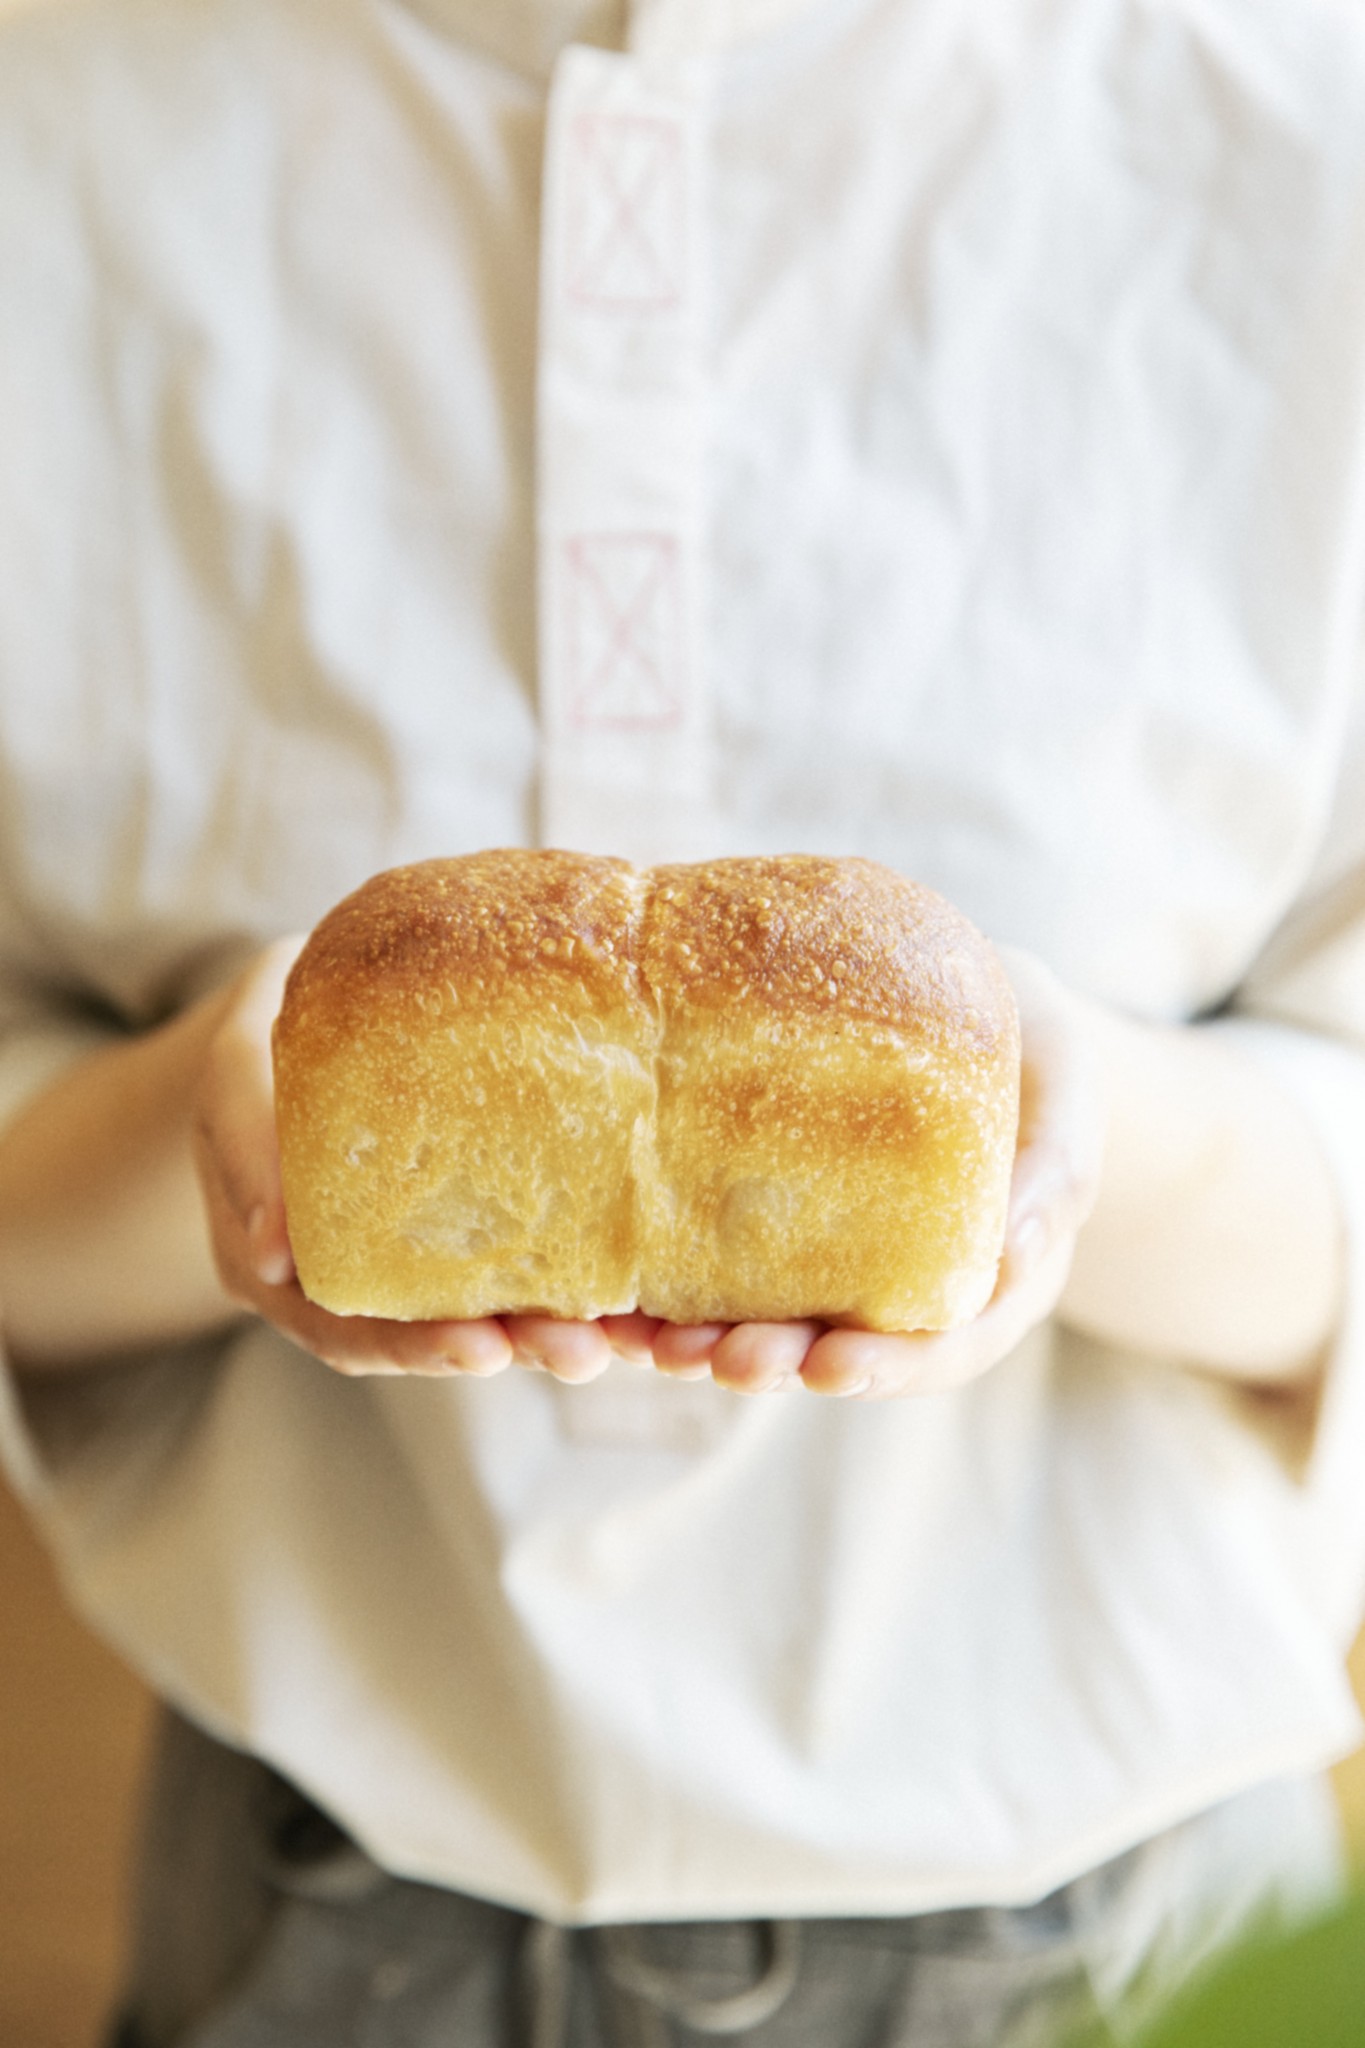 食パン「オヤコノキズナ」250円。道産小麦「キタノカオリ」と、子供にあたる「ゆめちから」をブレンド。